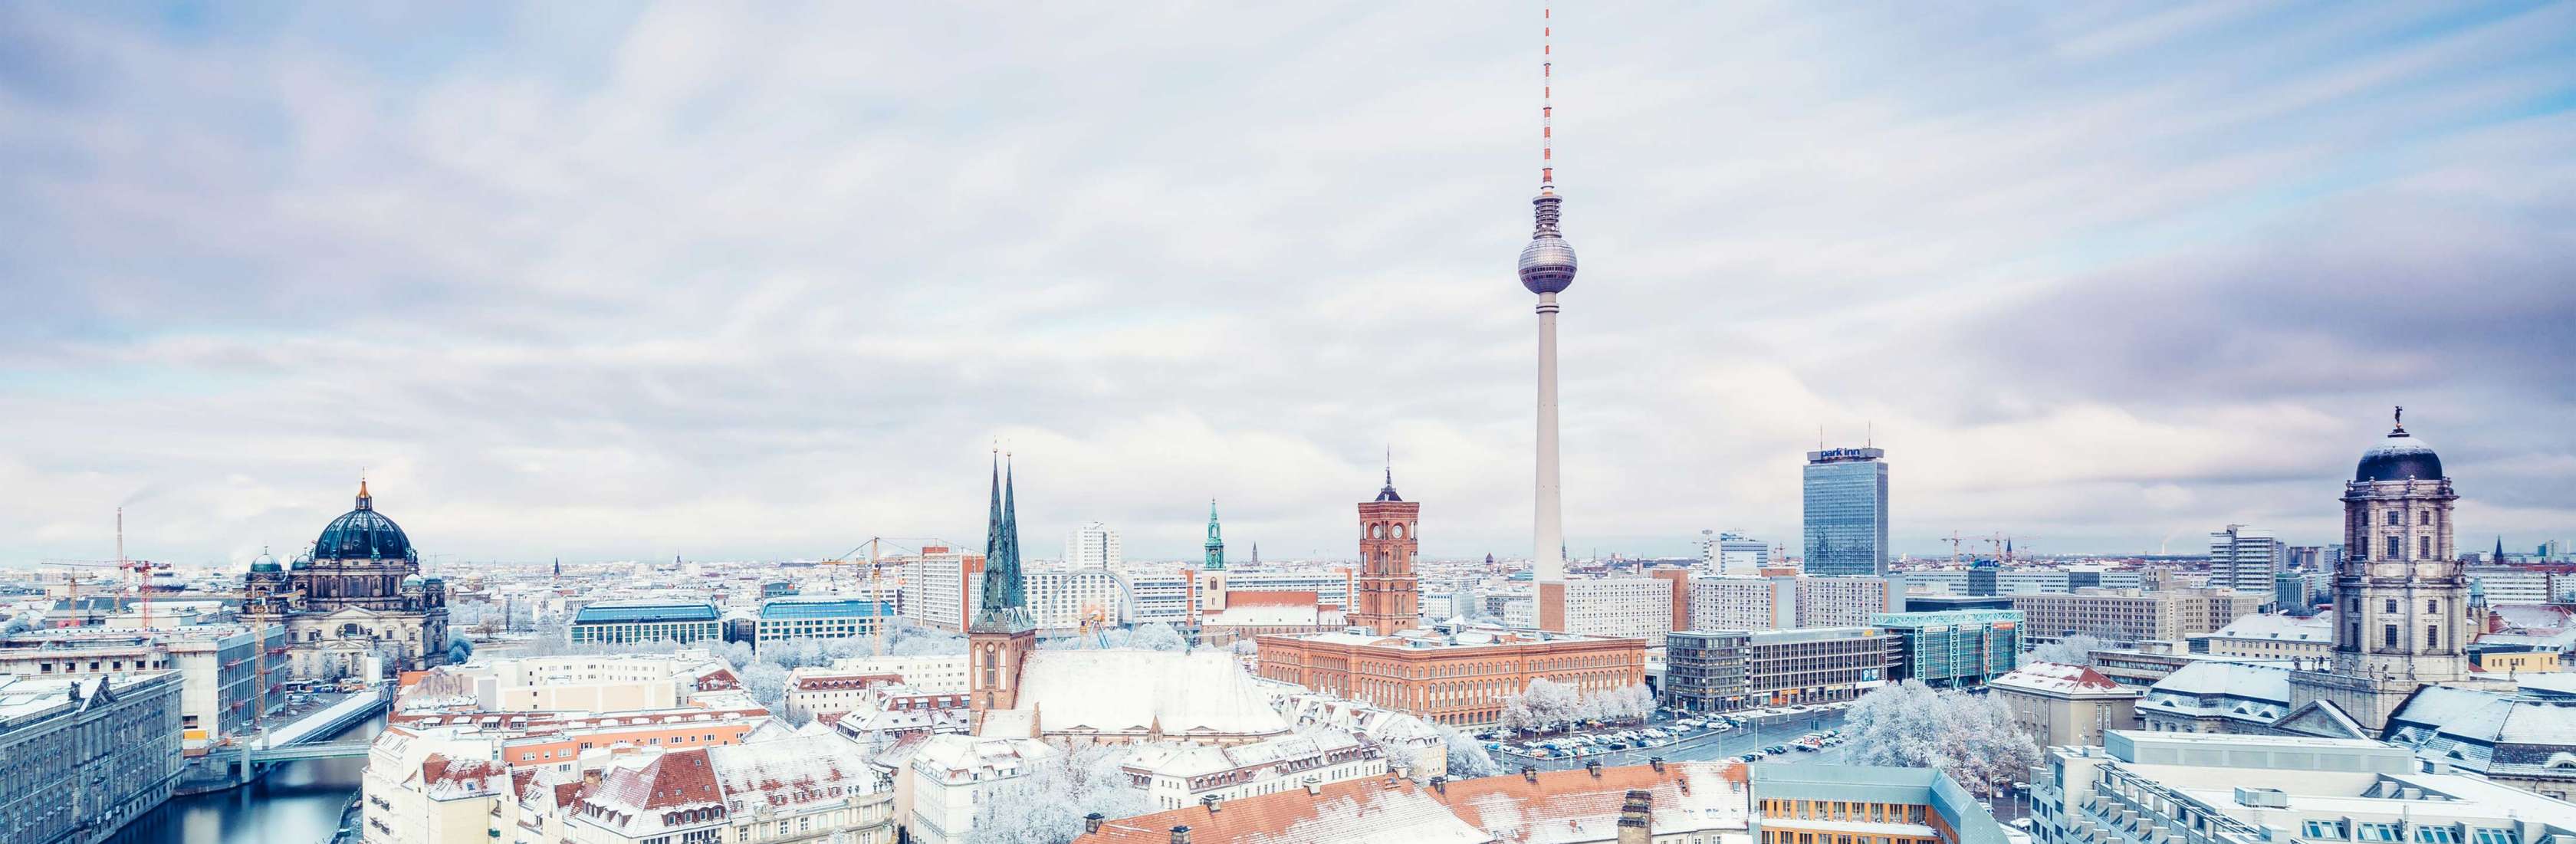 Risikolebensversicherung in Berlin: Vereinbaren Sie noch heute Ihren Beratungstermin mit unseren Experten